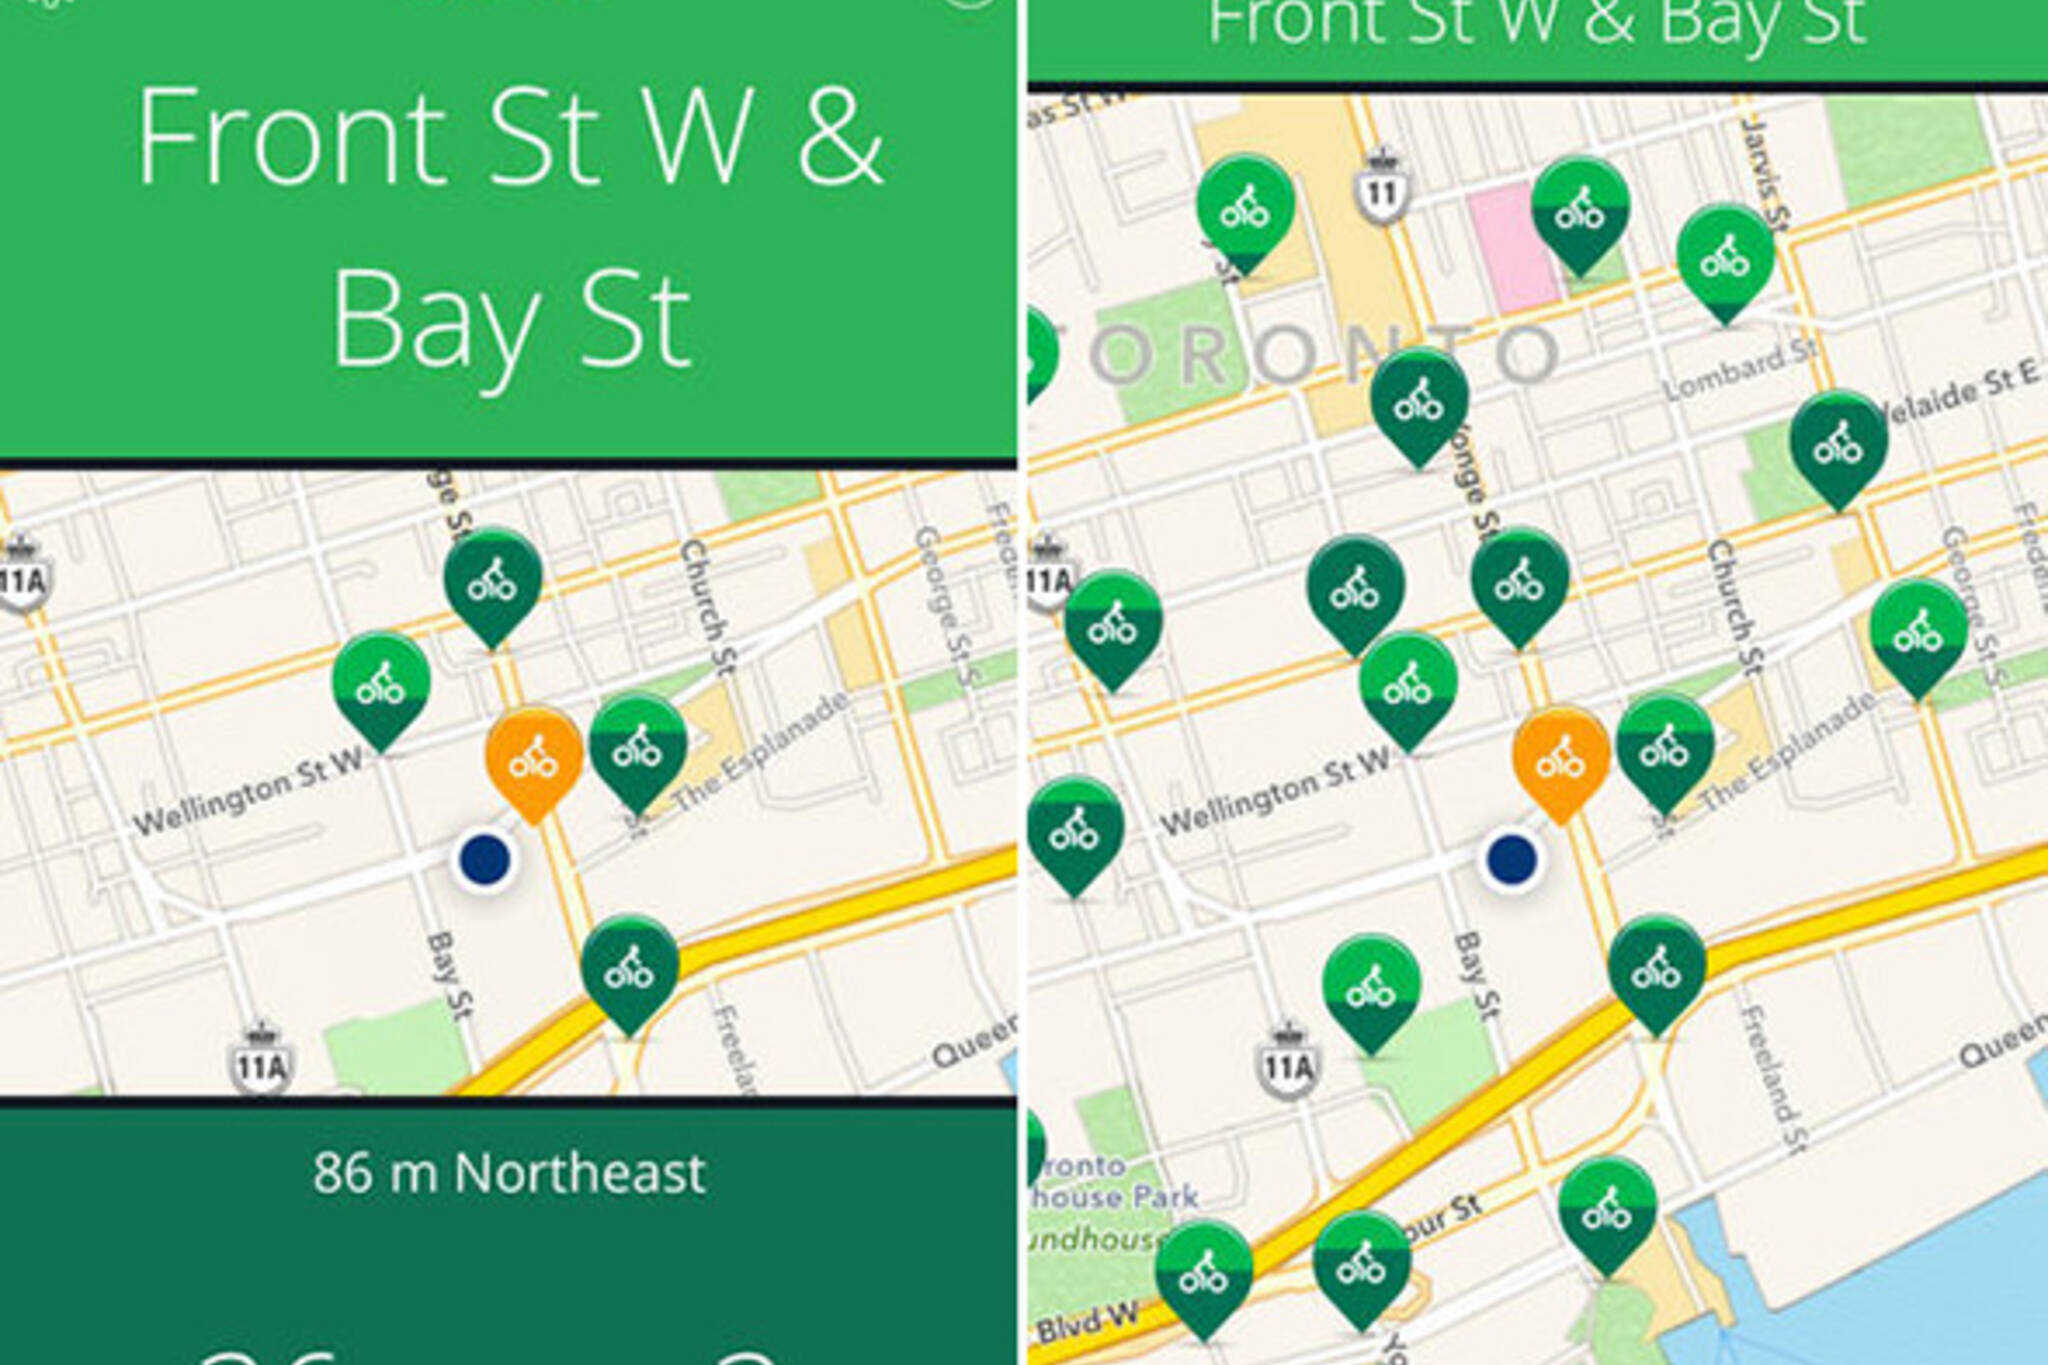 Toronto bike share app